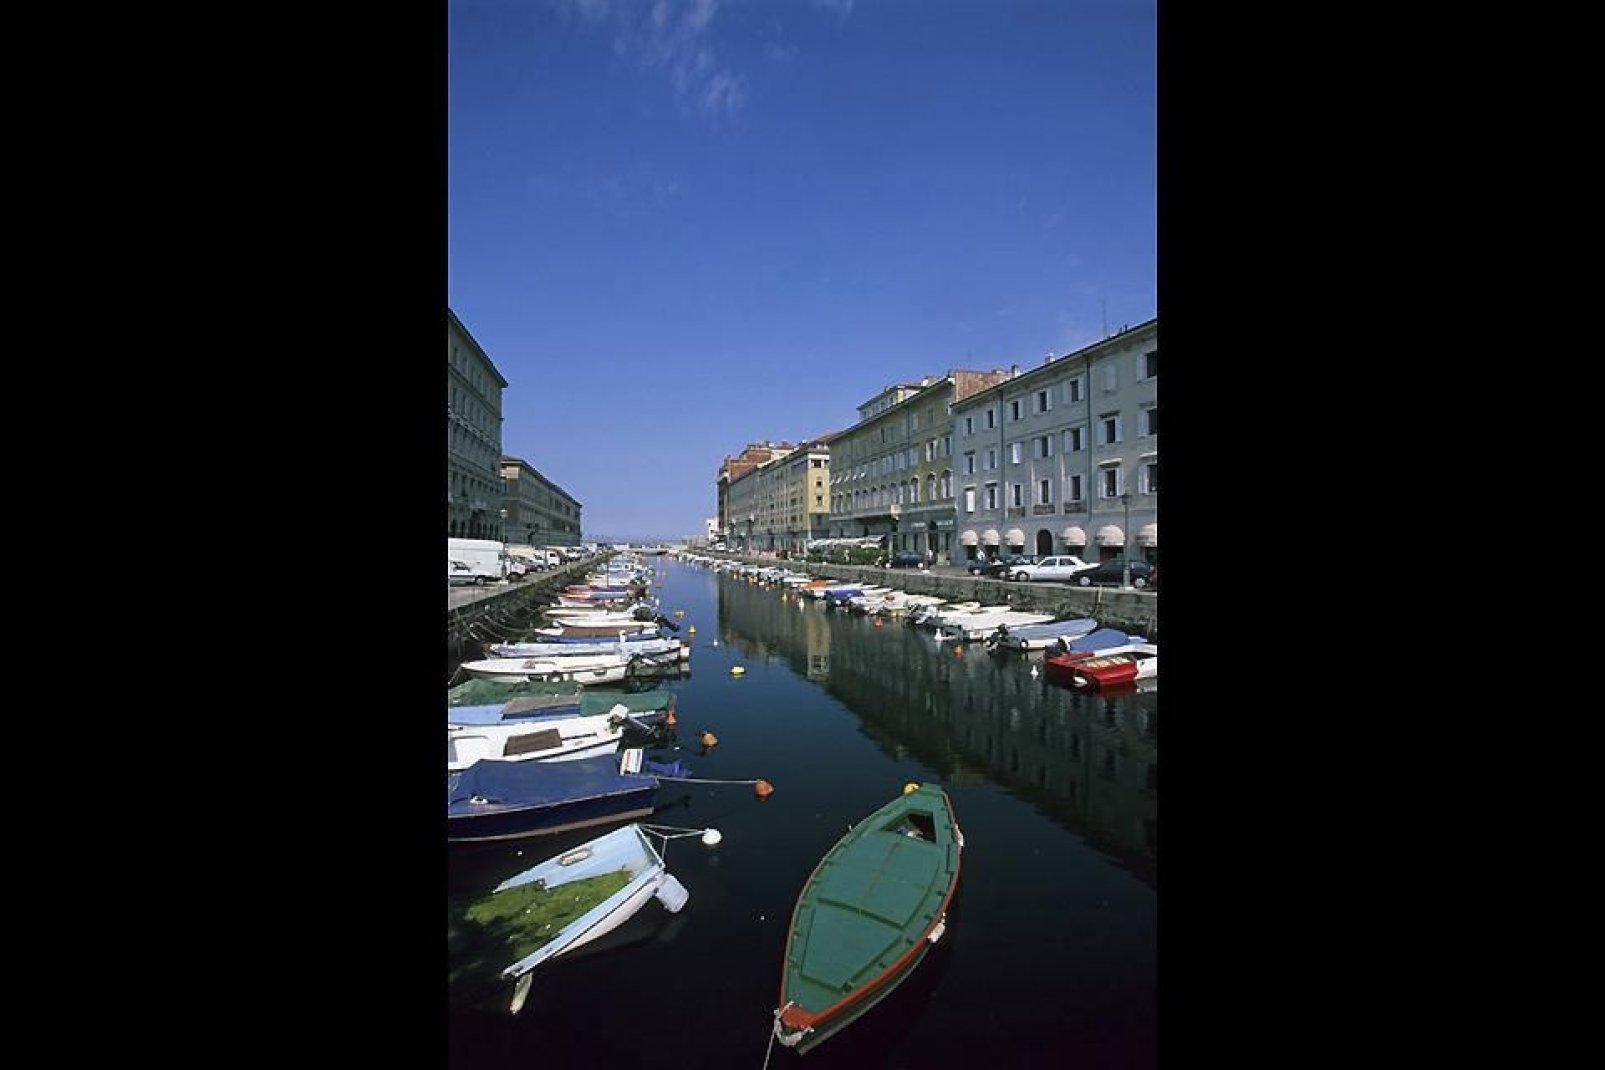 Cuore del capoluogo giuliano, sul canale si affacciano palazzi e ponti storici